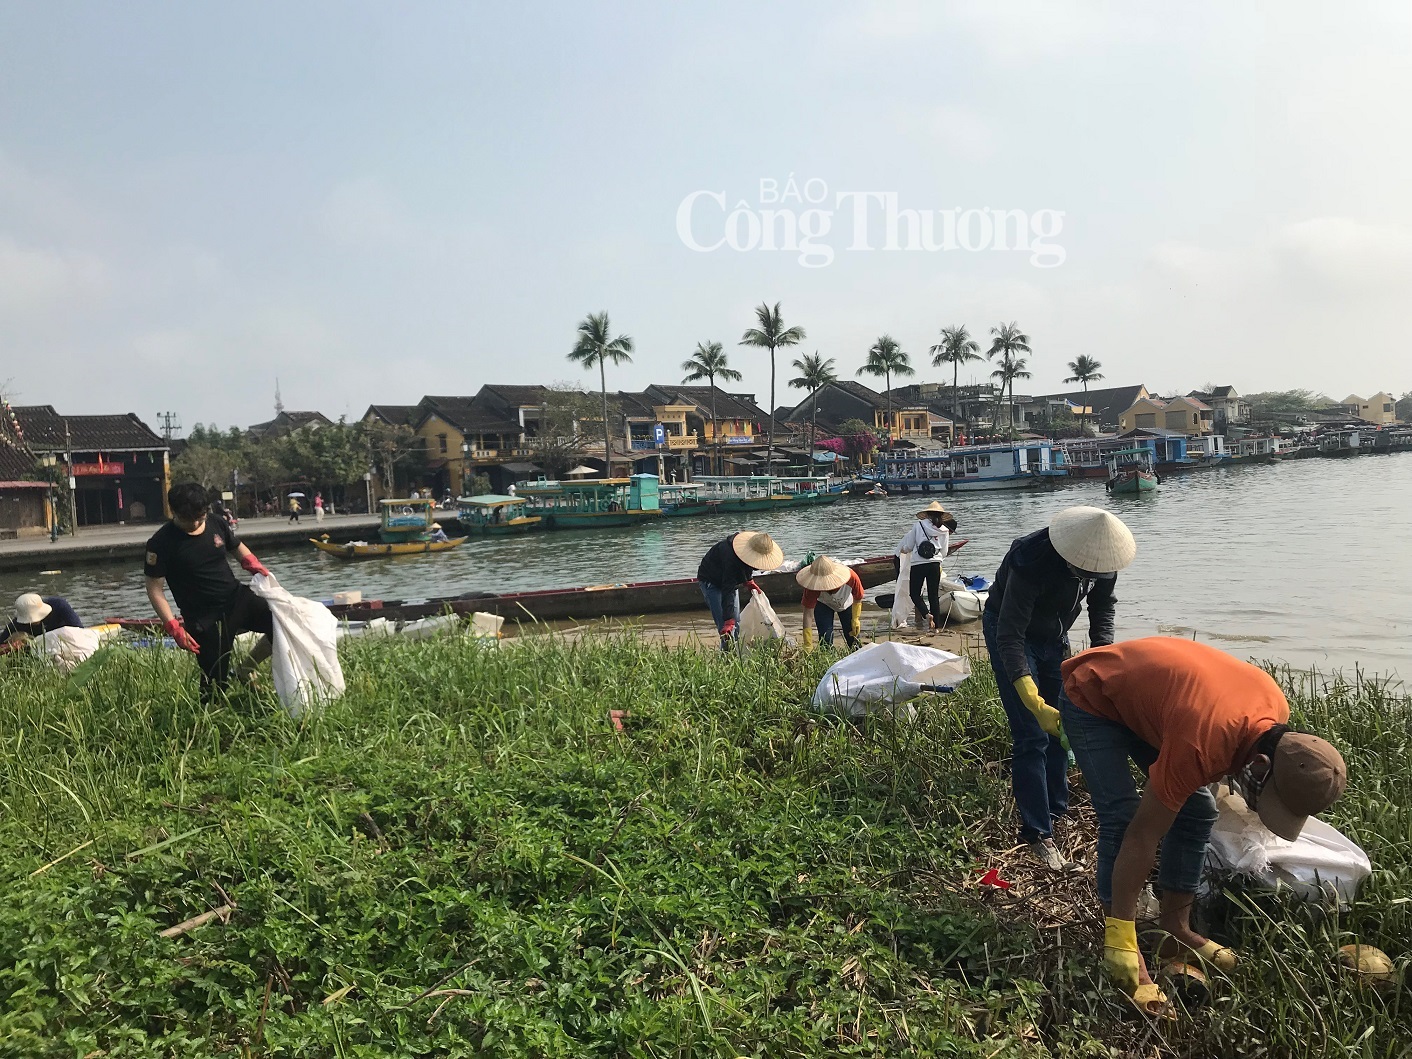 Tham quan phố Hội, du khách chèo thuyền vớt 1 tấn rác trên sông